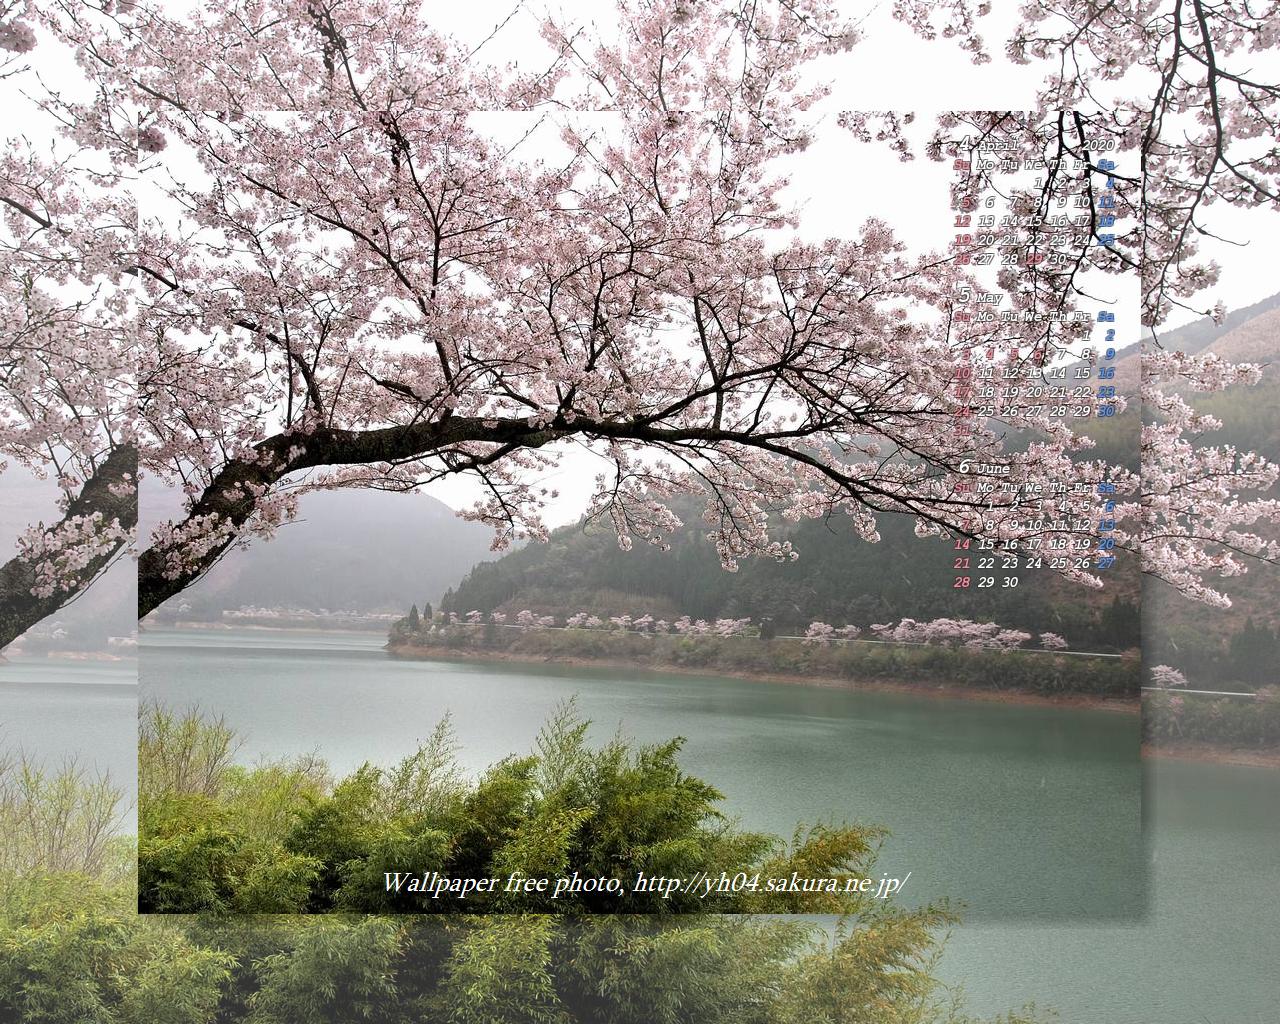 一房ダム湖の桜